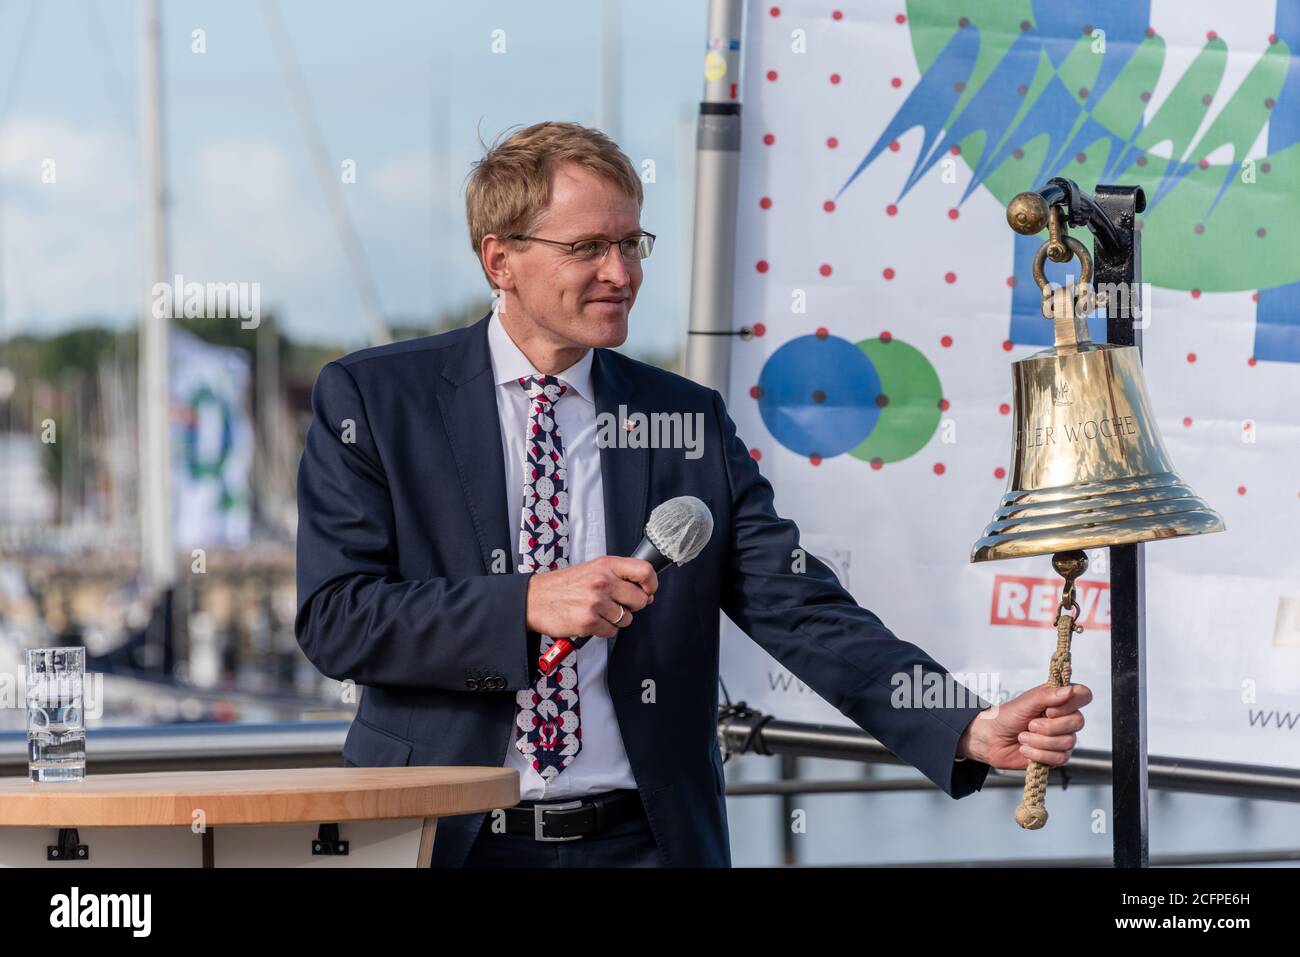 Die Eröffnung der Kieler Woche 2020 im Olympiahafen Kiel Schilksee durch den Ministerpräsidenten Daniel Günther und weitere prominente Personen Stock Photo